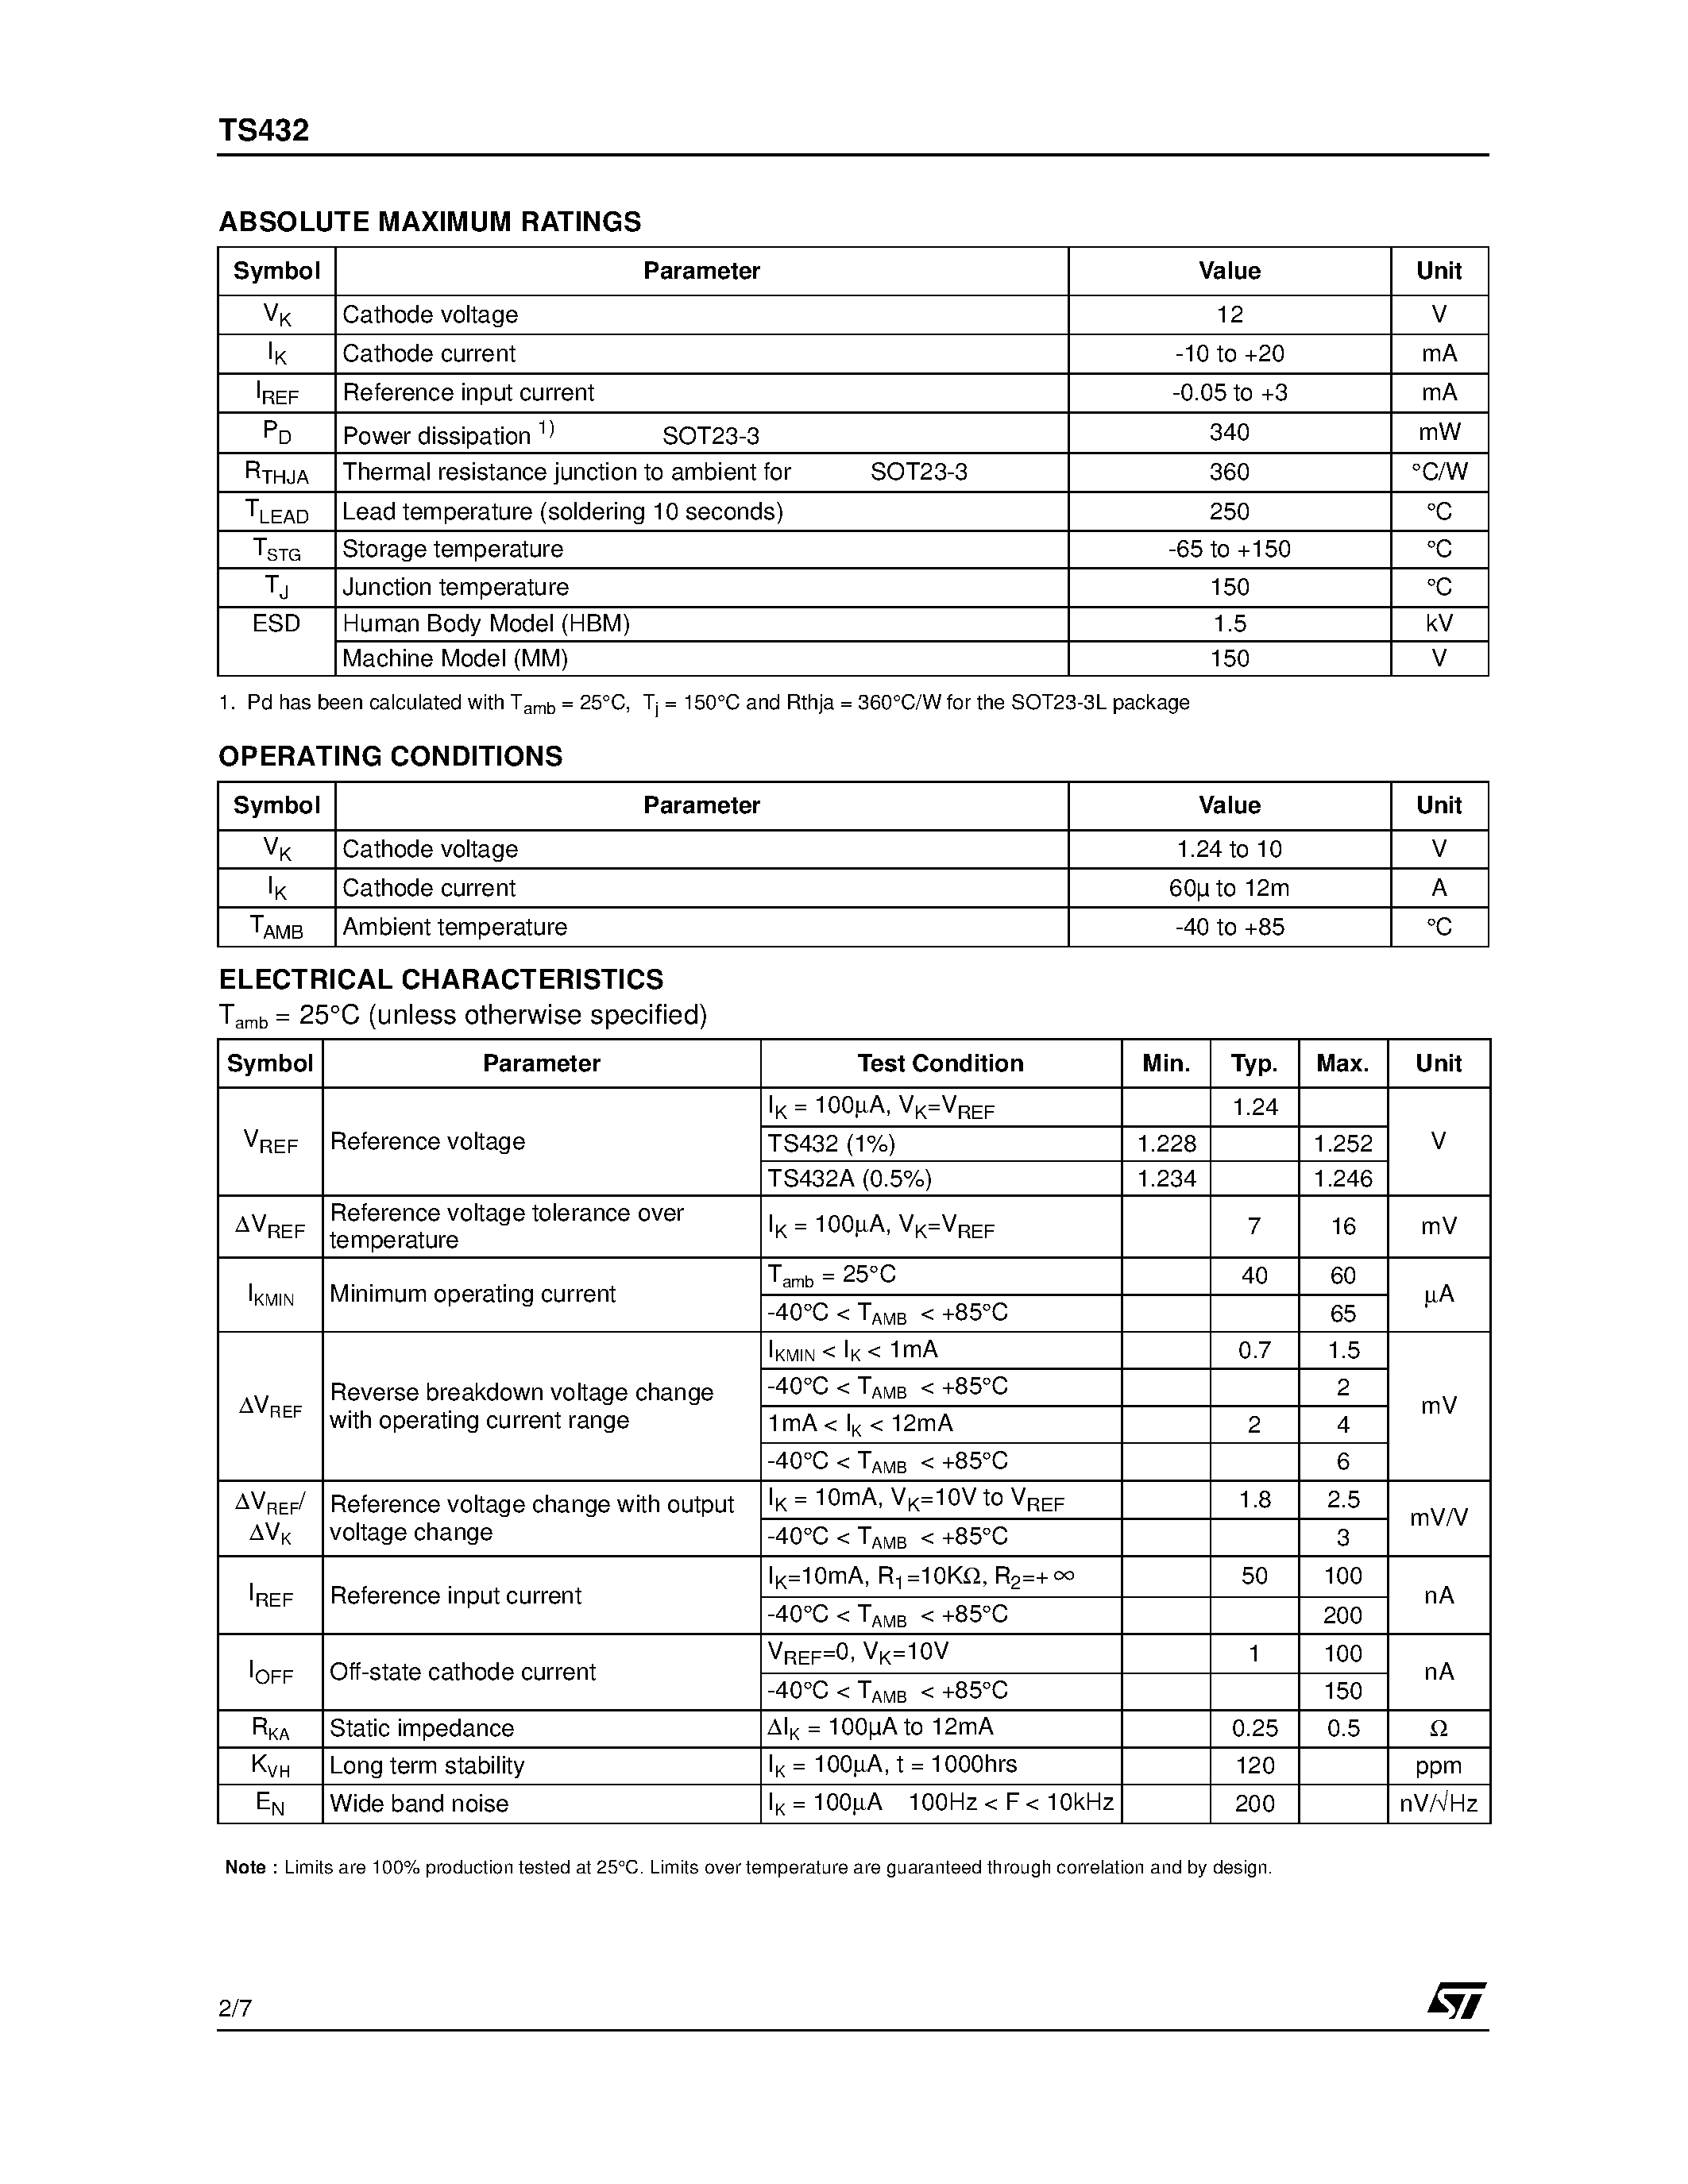 Datasheet TS432AILT - 1.24V ADJUSTABLE SHUNT VOLTAGE REFERENCE page 2